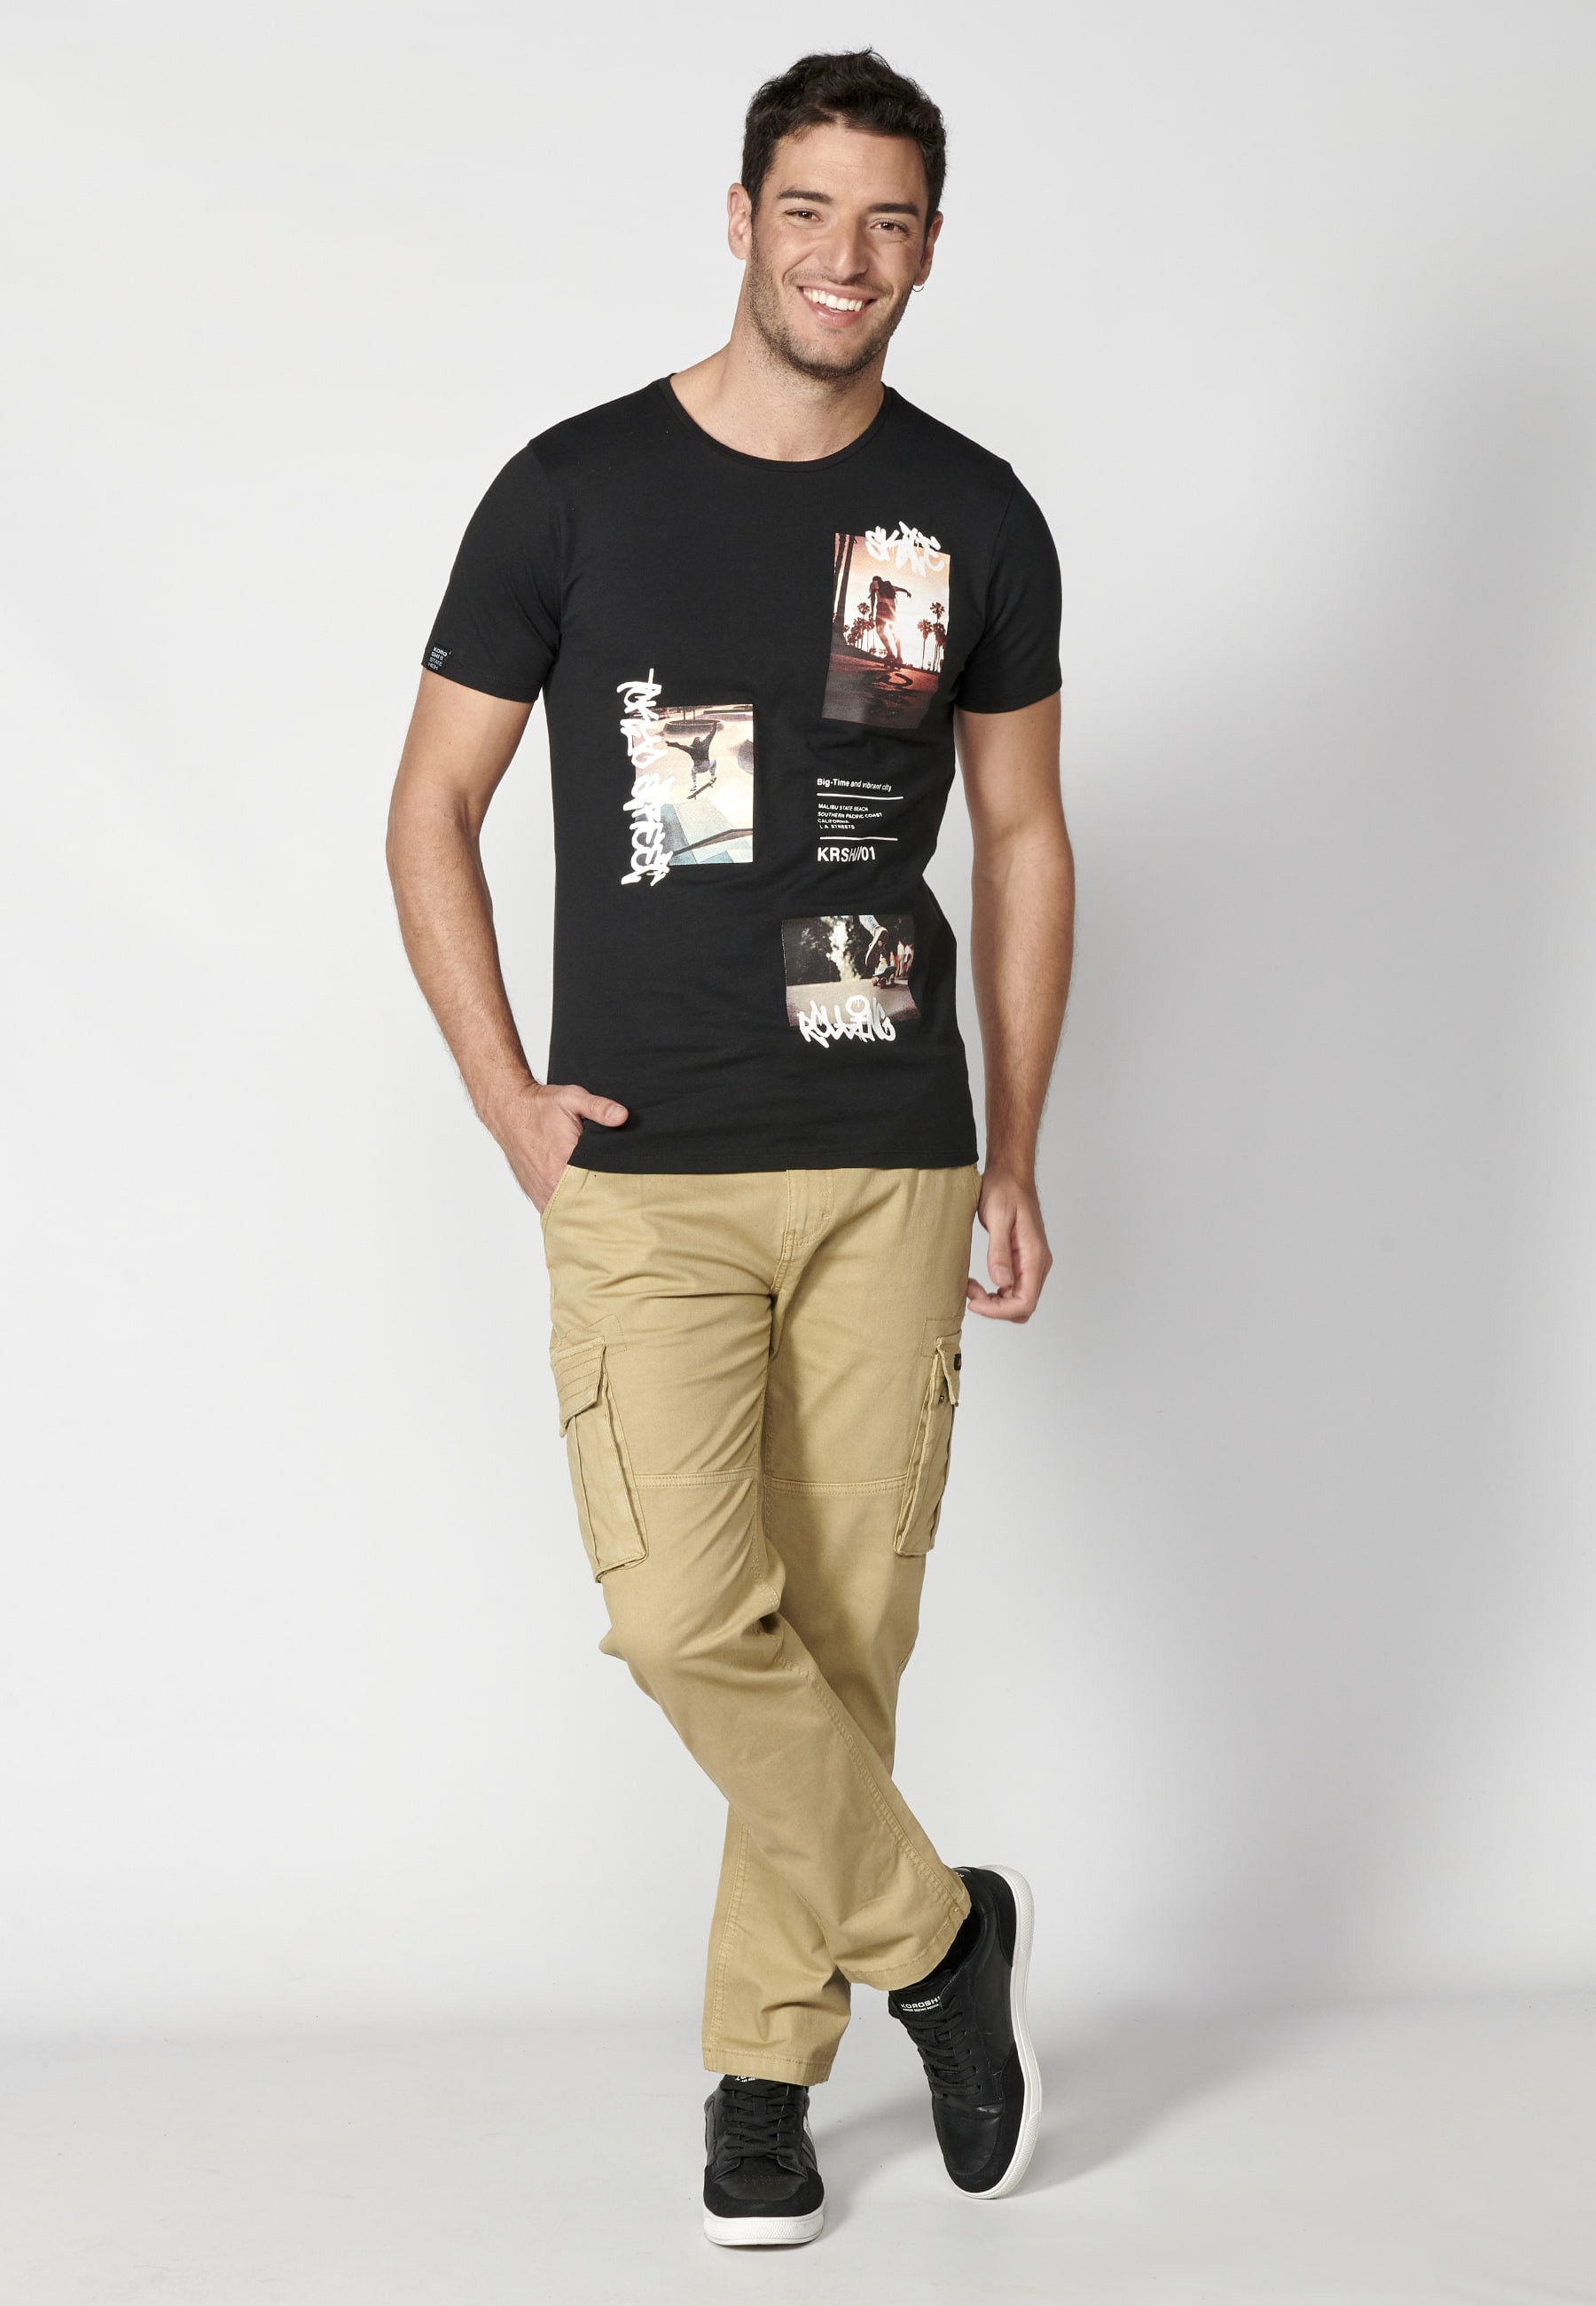 Black cotton short-sleeved T-shirt for Men